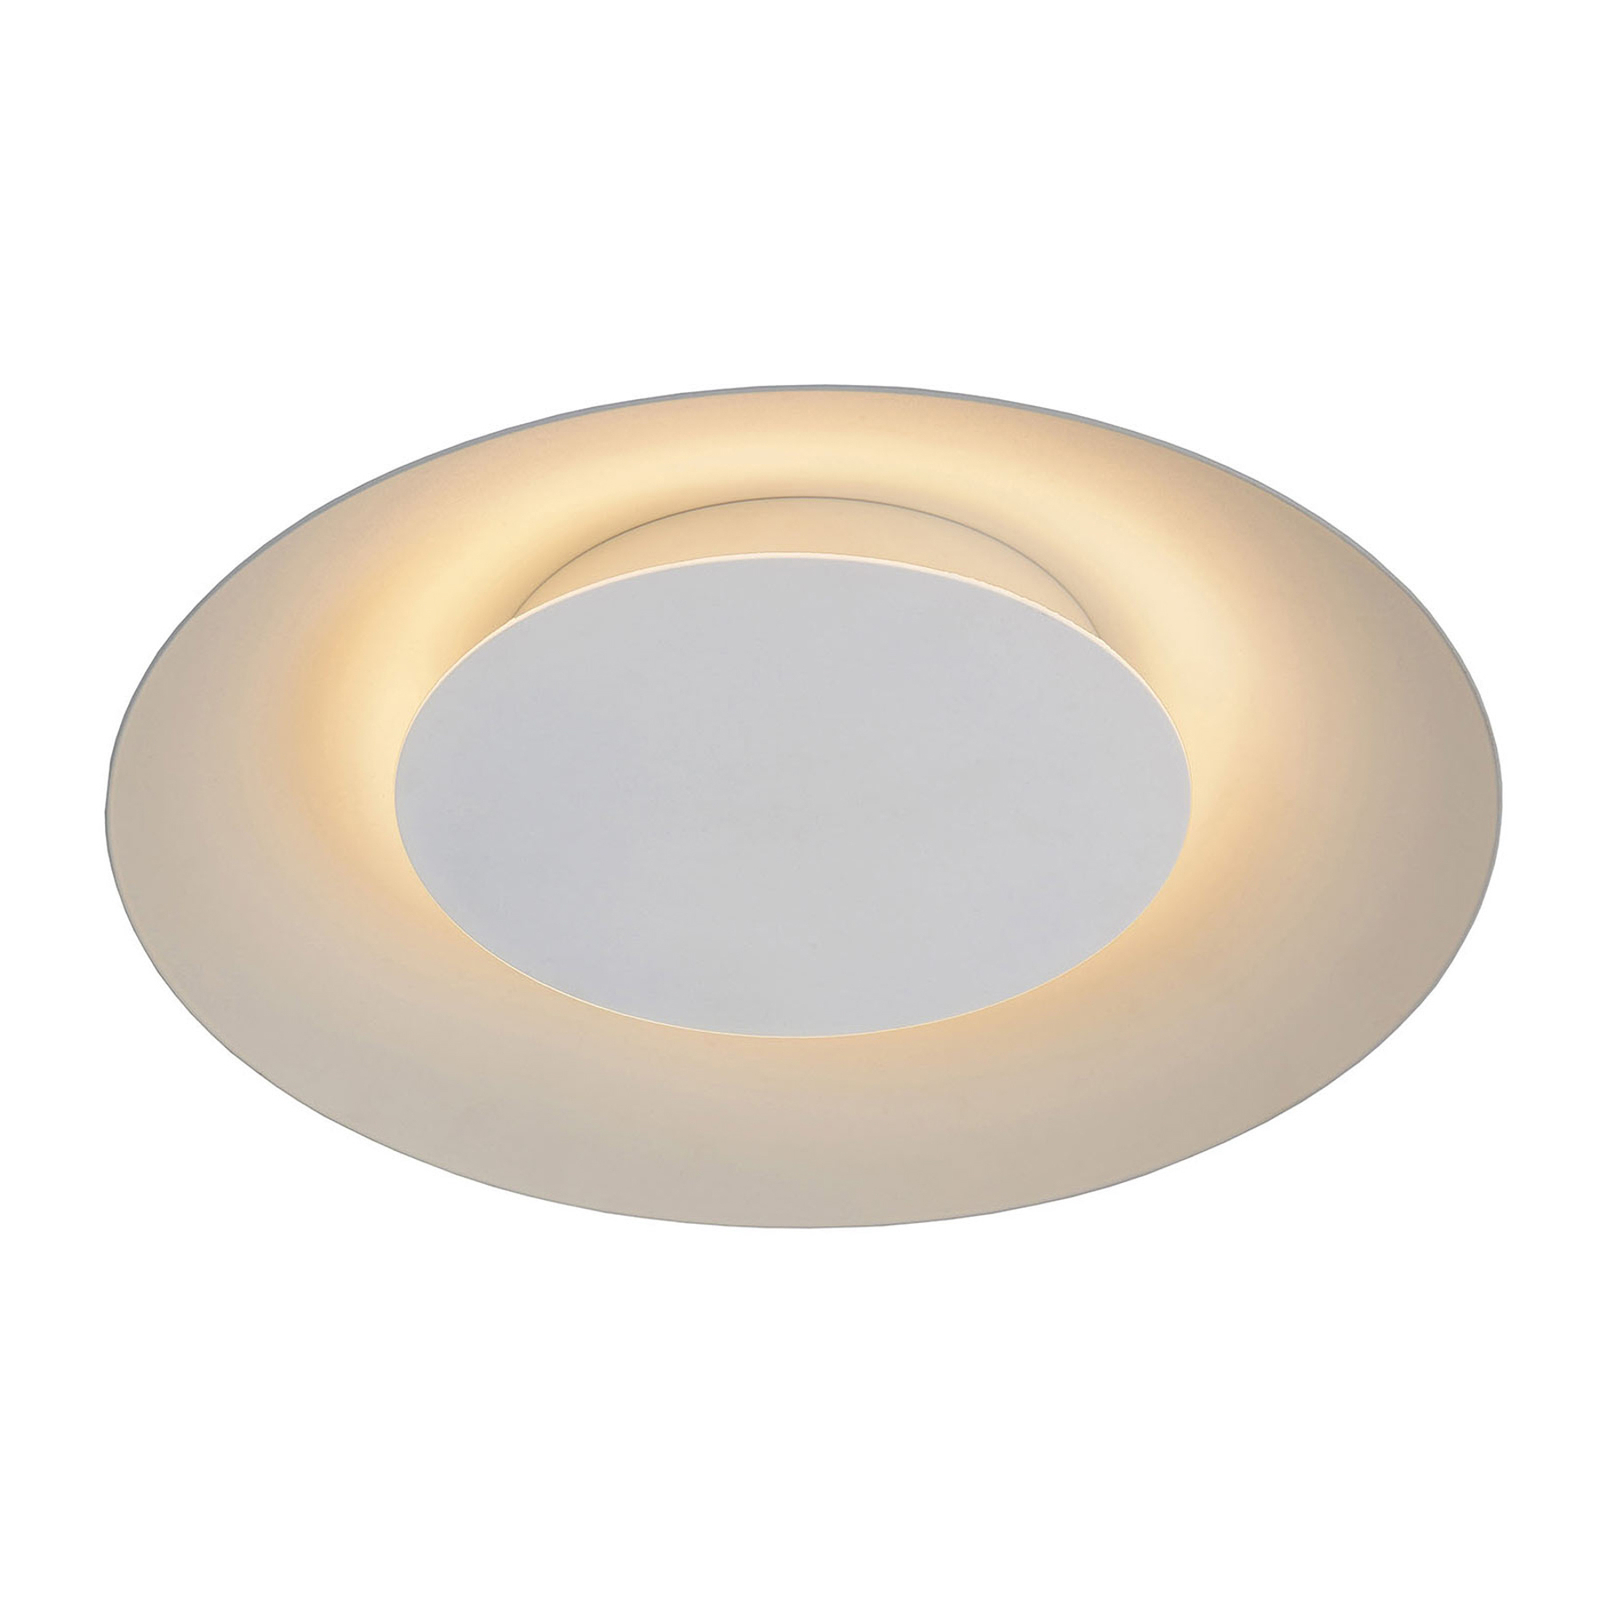 LED ceiling light Foskal in white, Ø 34.5 cm